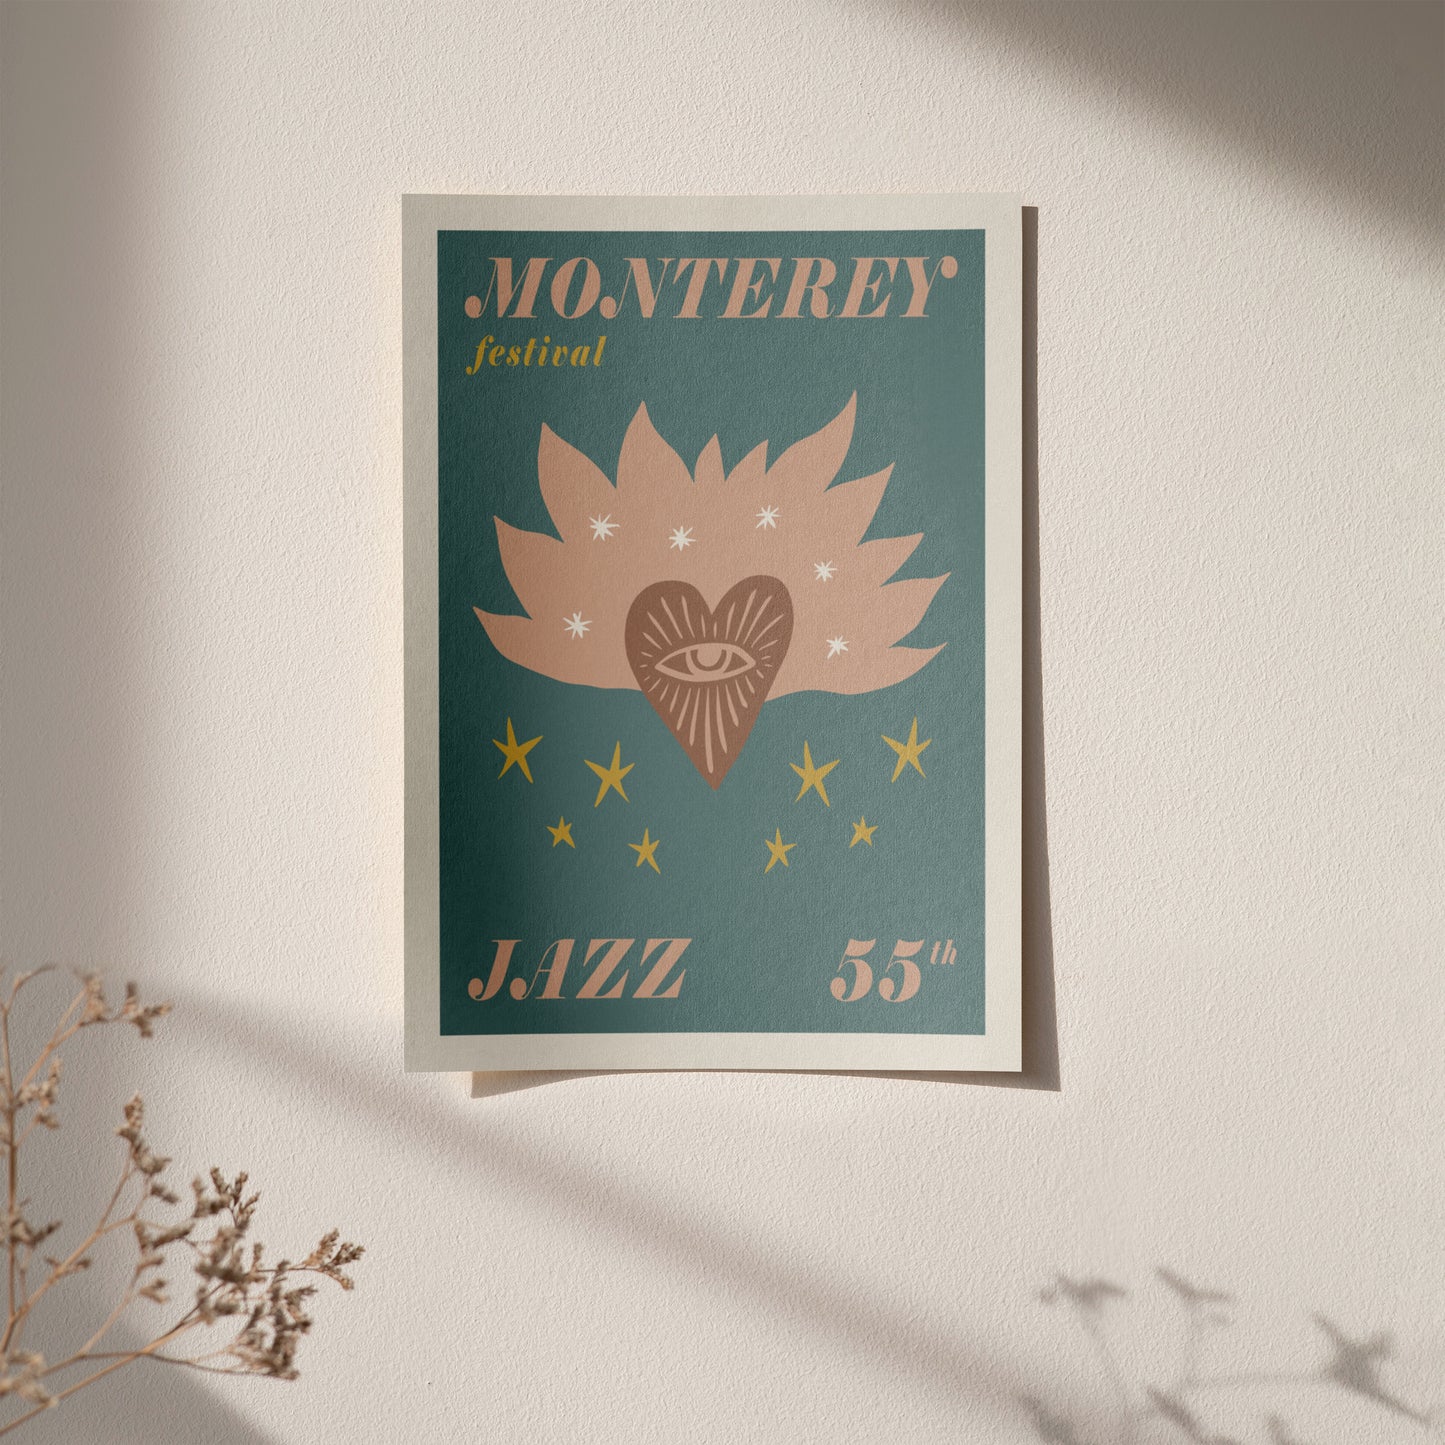 Monterey Jazz Festival Poster